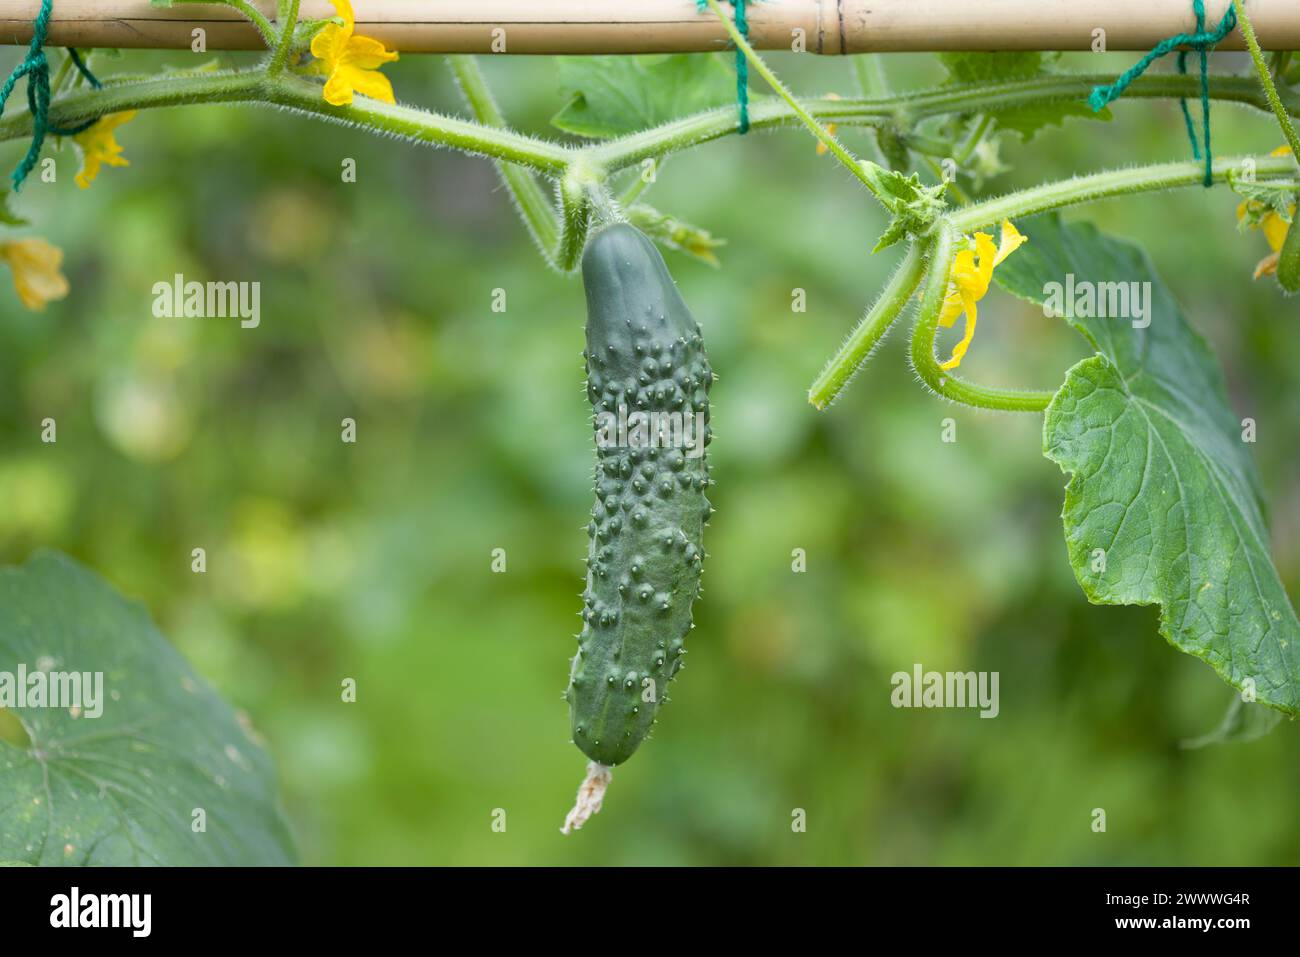 Primo piano di cetrioli (Bedfordshire Prize ridged Cucumbers) che crescono su una pianta in un giardino inglese in estate, Regno Unito Foto Stock